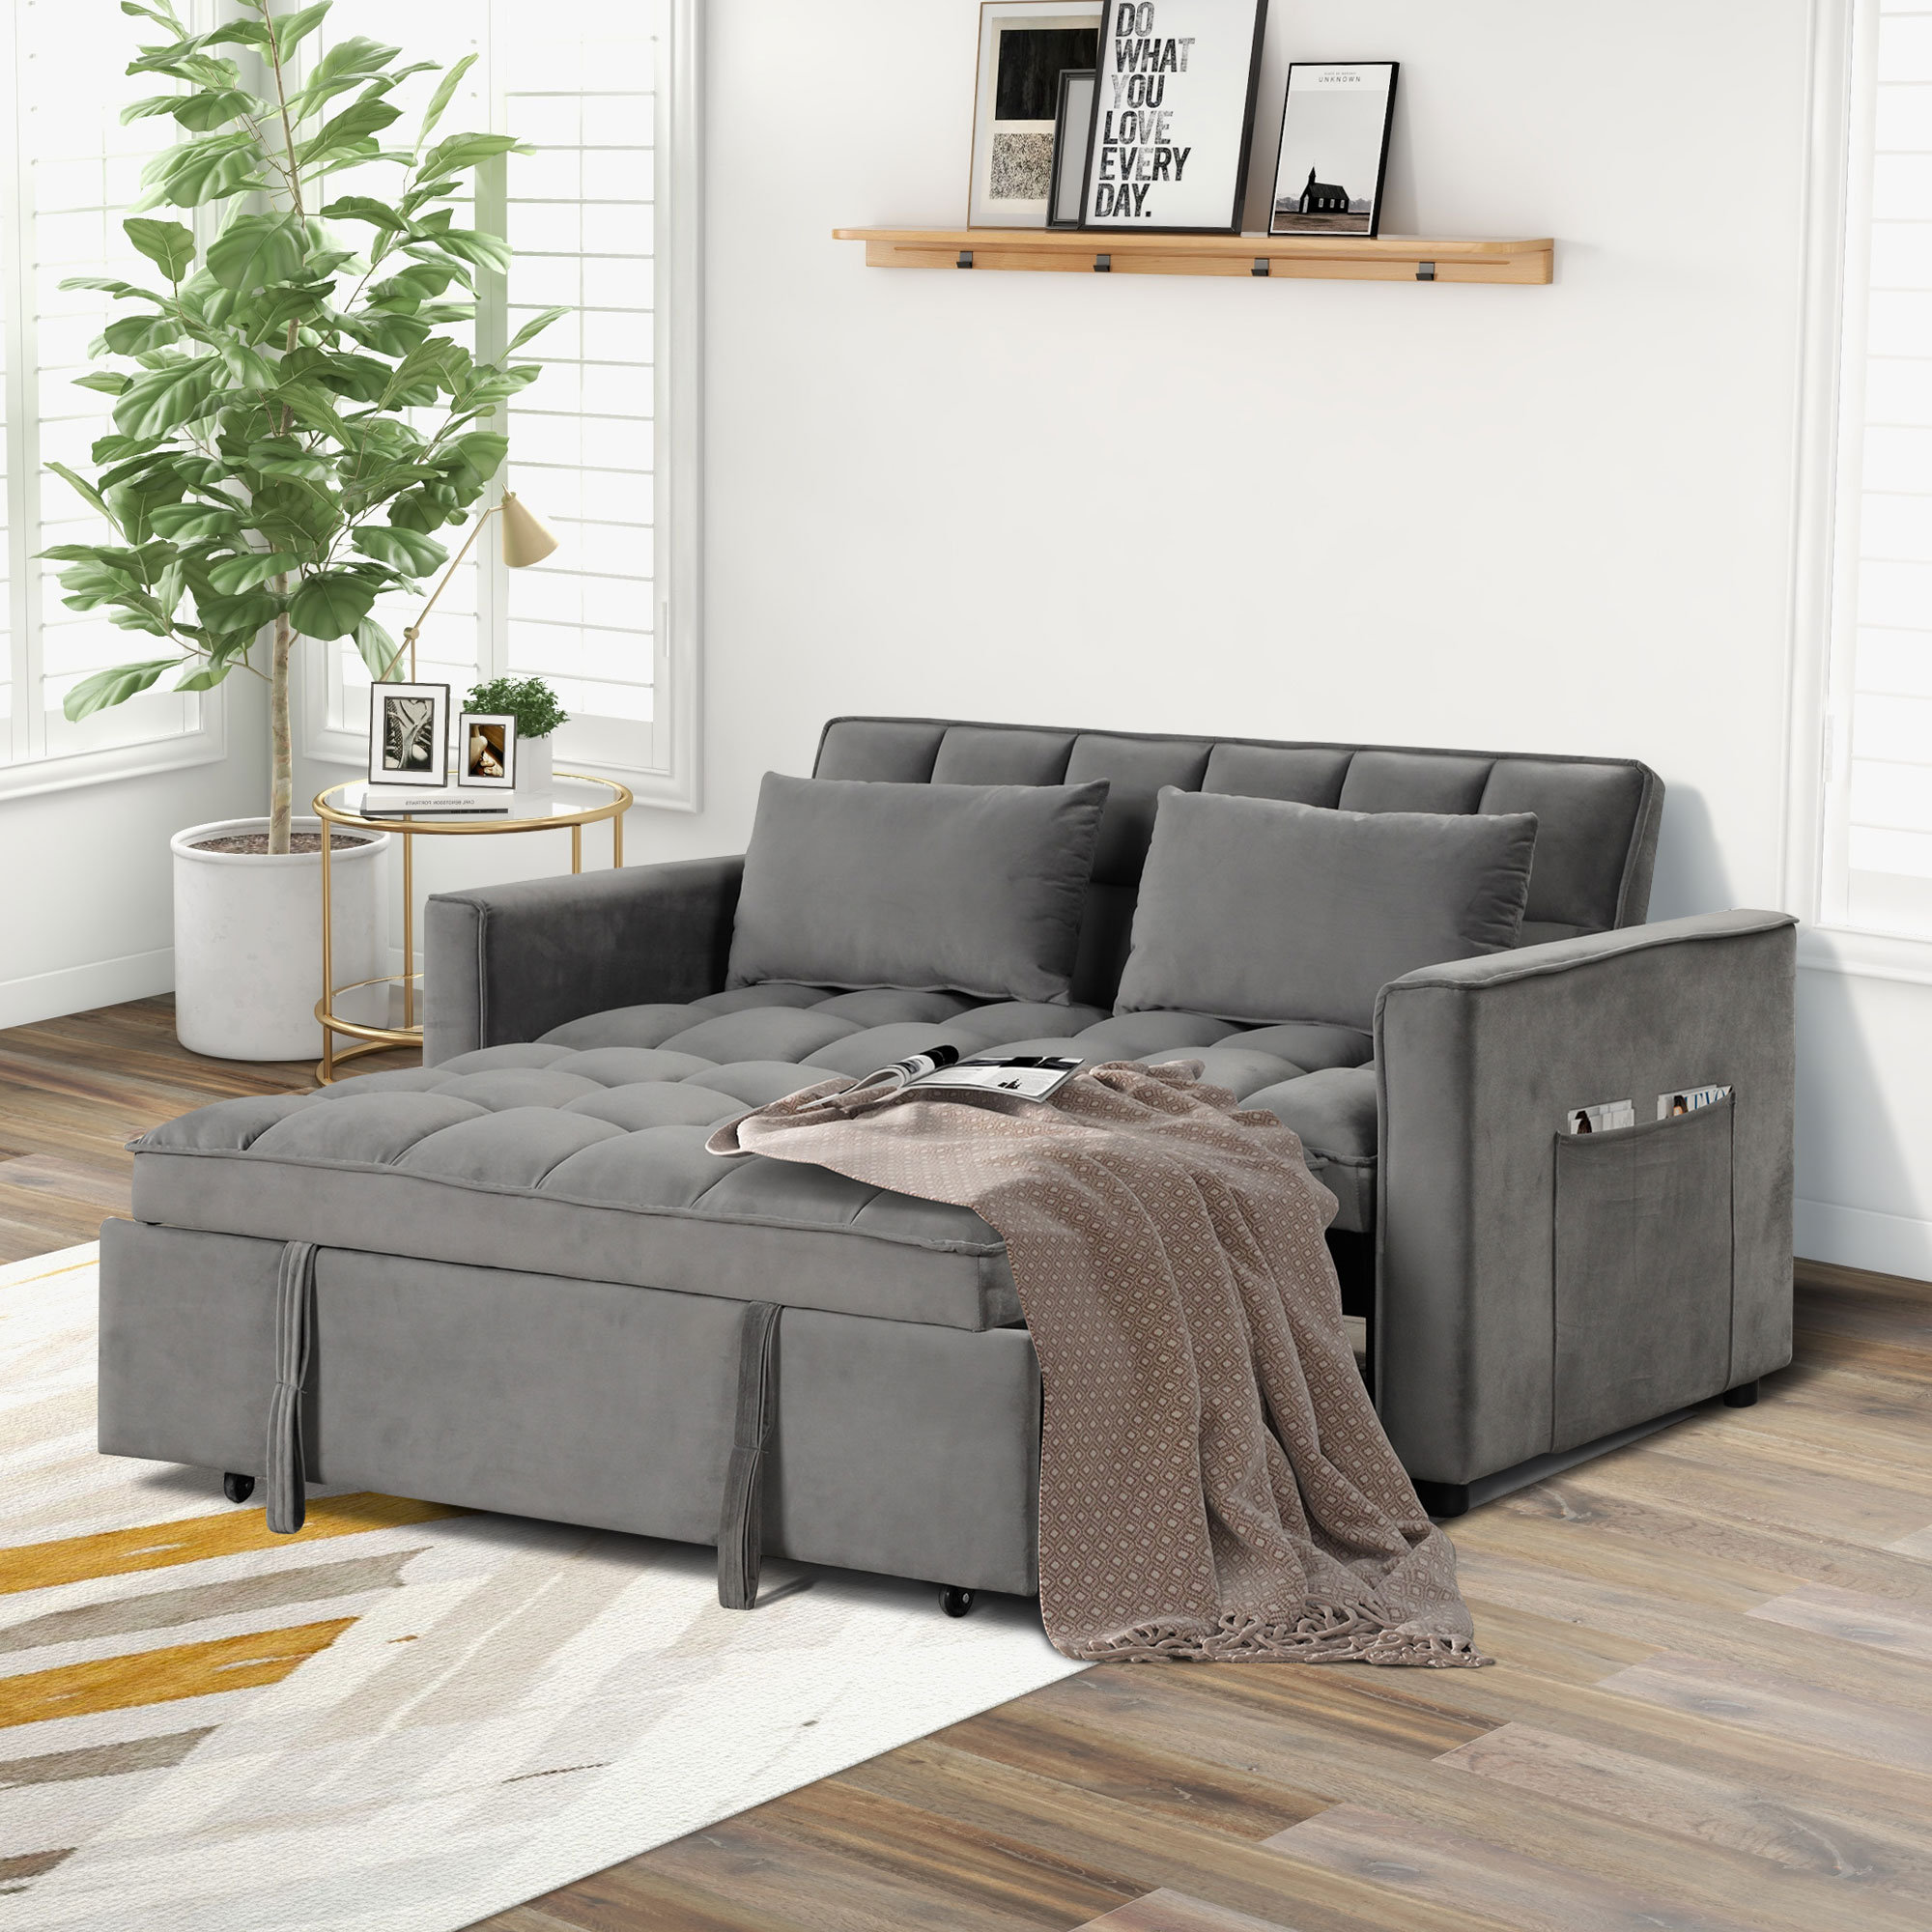 https://assets.wfcdn.com/im/83484190/compr-r85/2547/254738591/nerta-552-wide-convertible-velvet-sleeper-sofa-bed-with-reclining-backrest-and-2-throw-pillows.jpg